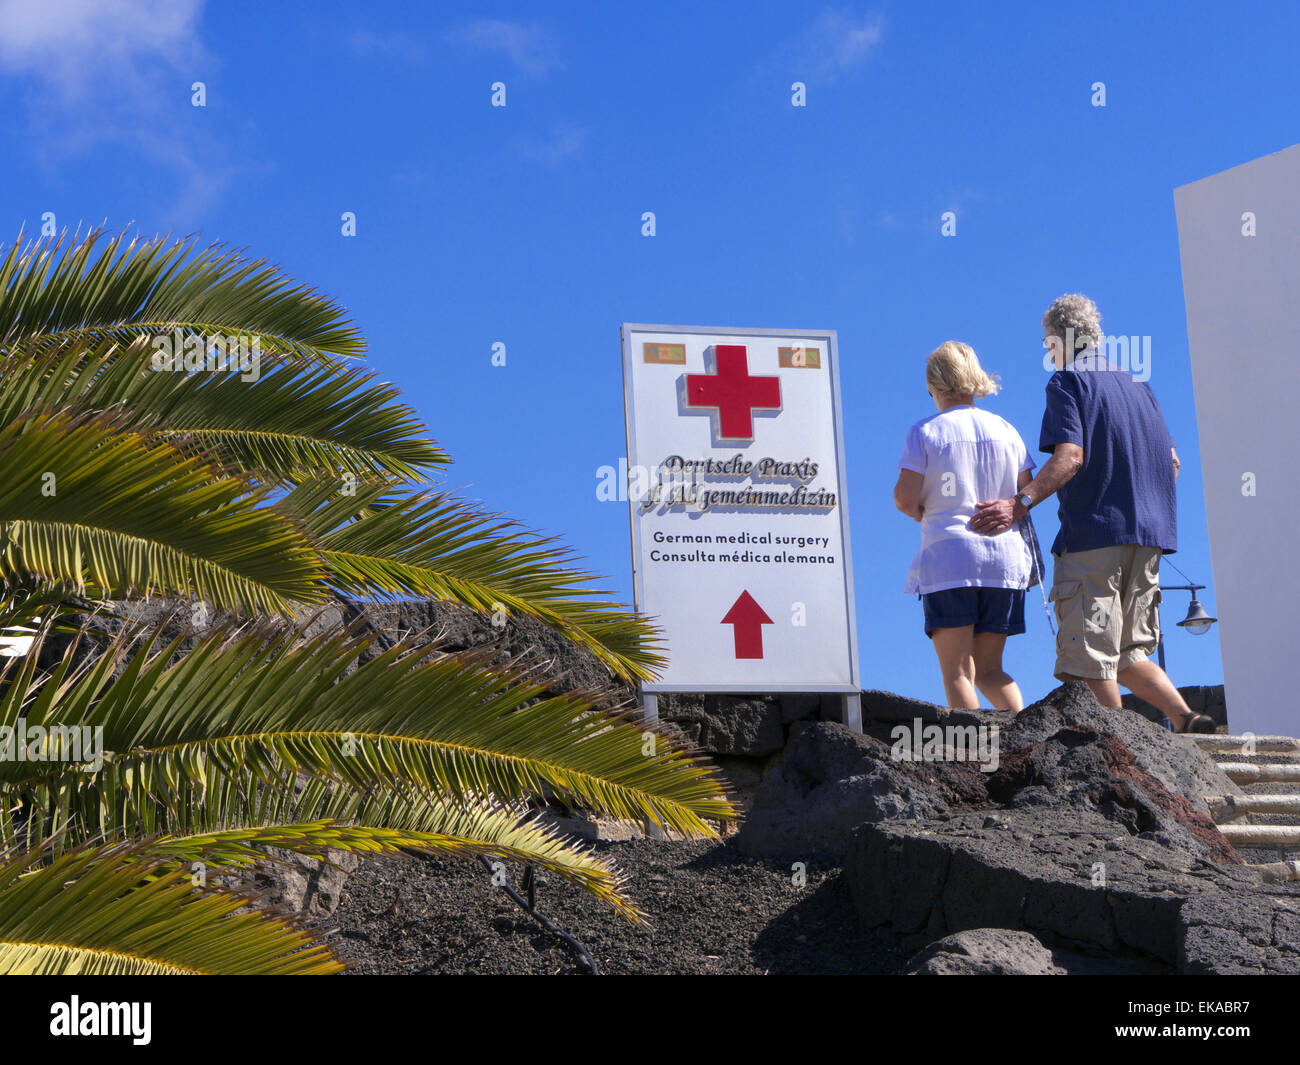 Urlaub healthcare medizinische Behandlung im Ausland Paar und Zeichen für den lokalen medizinischen Behandlung Klinik Pflege in Sun Holiday Lage mit Palmen & blauer Himmel Stockfoto